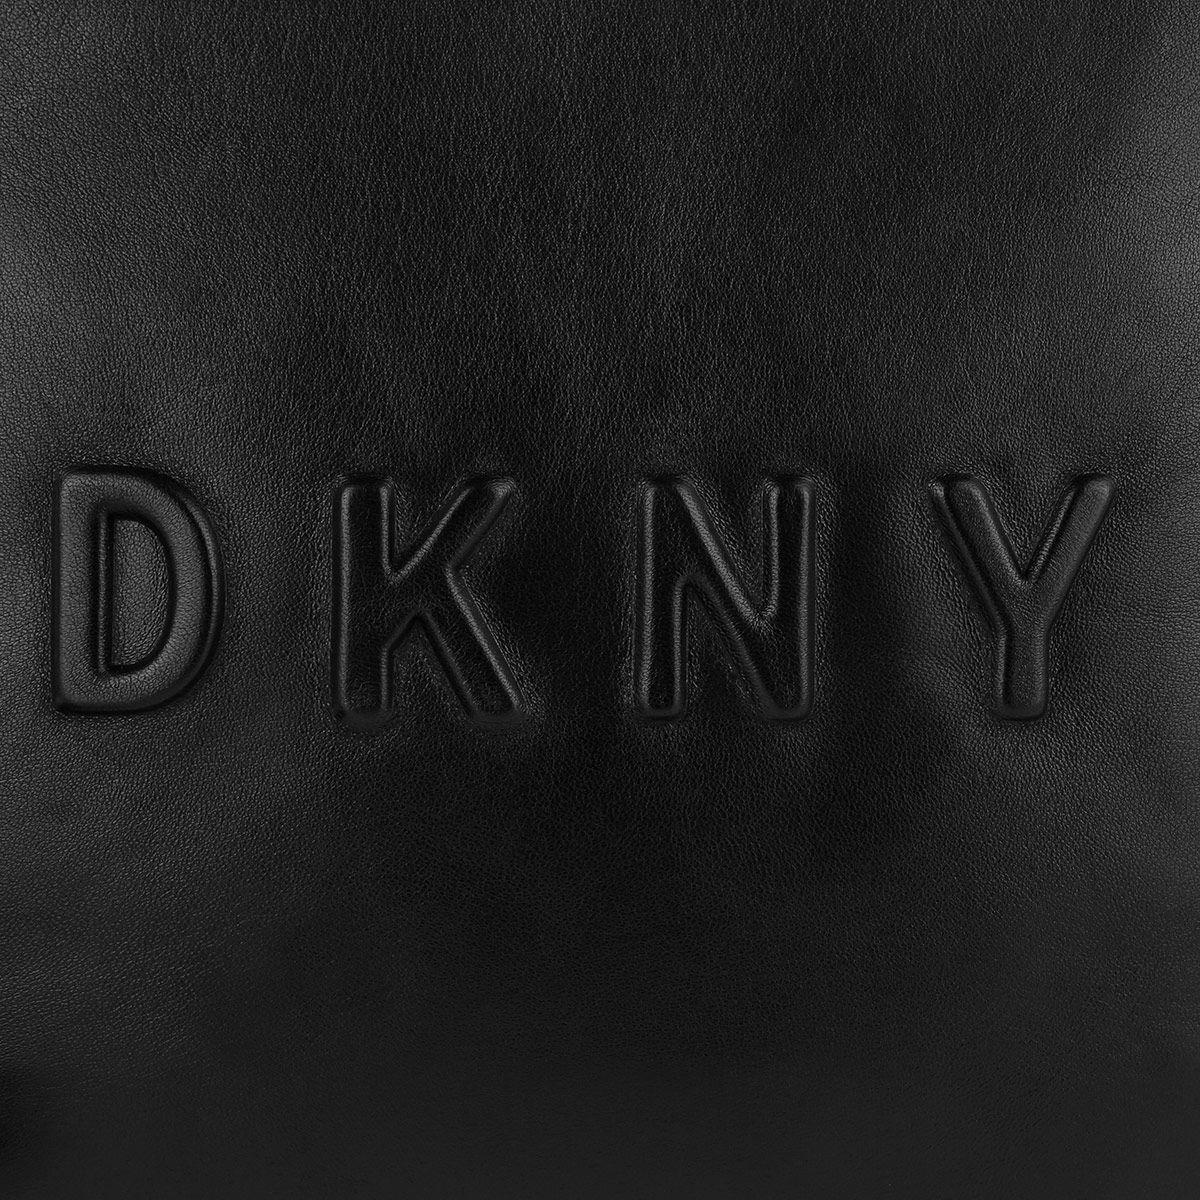 Debossed Logo - DKNY Debossed Logo Crossbody Bag Large Black-Black in black ...